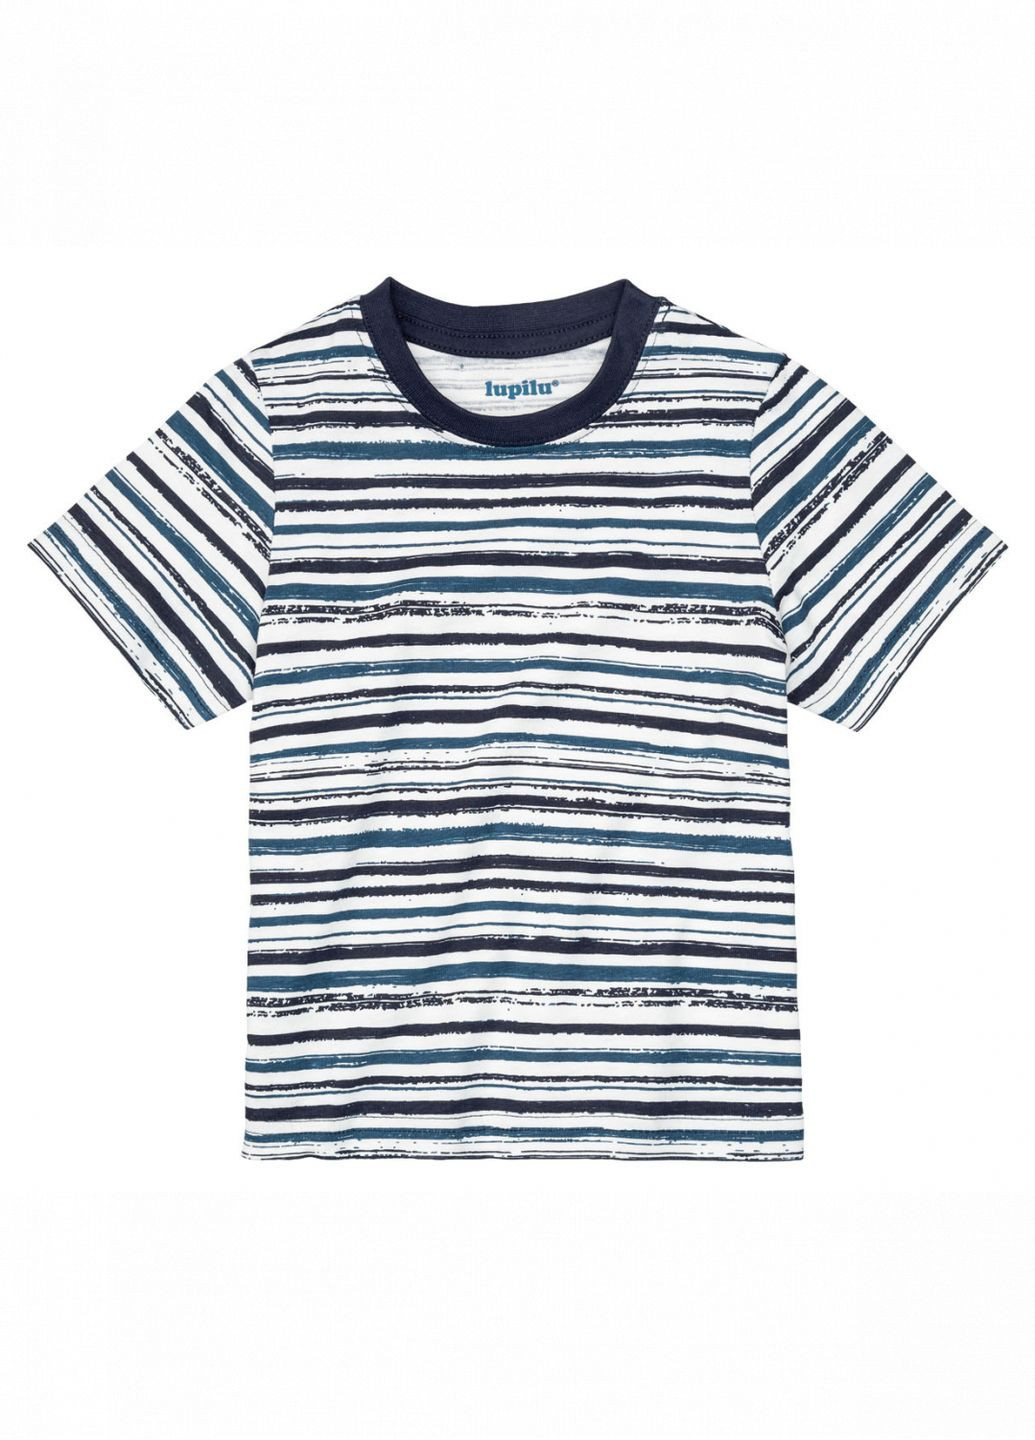 Комбинированная демисезонная футболка хлопковая для мальчика 372241 Lupilu